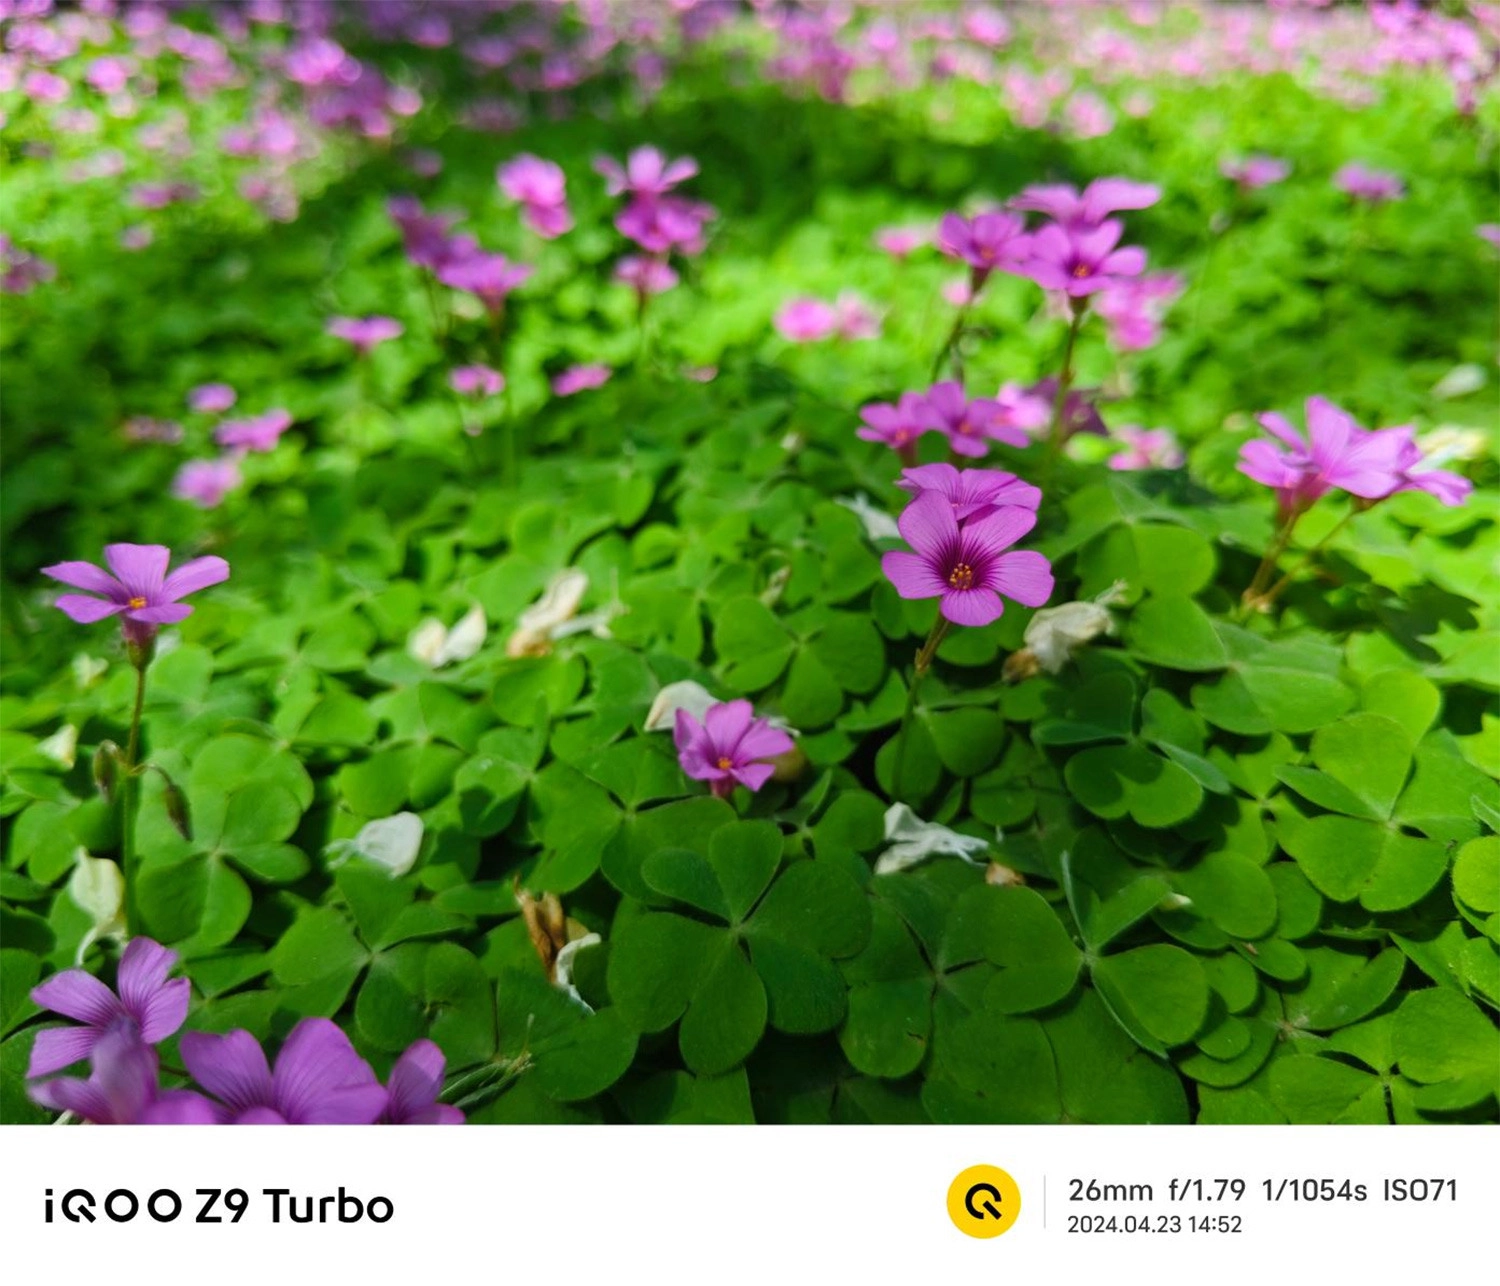 Mở hộp Vivo iQOO Z9 Turbo, Ảnh chụp bằng điện thoại Vivo iQOO Z9 Turbo